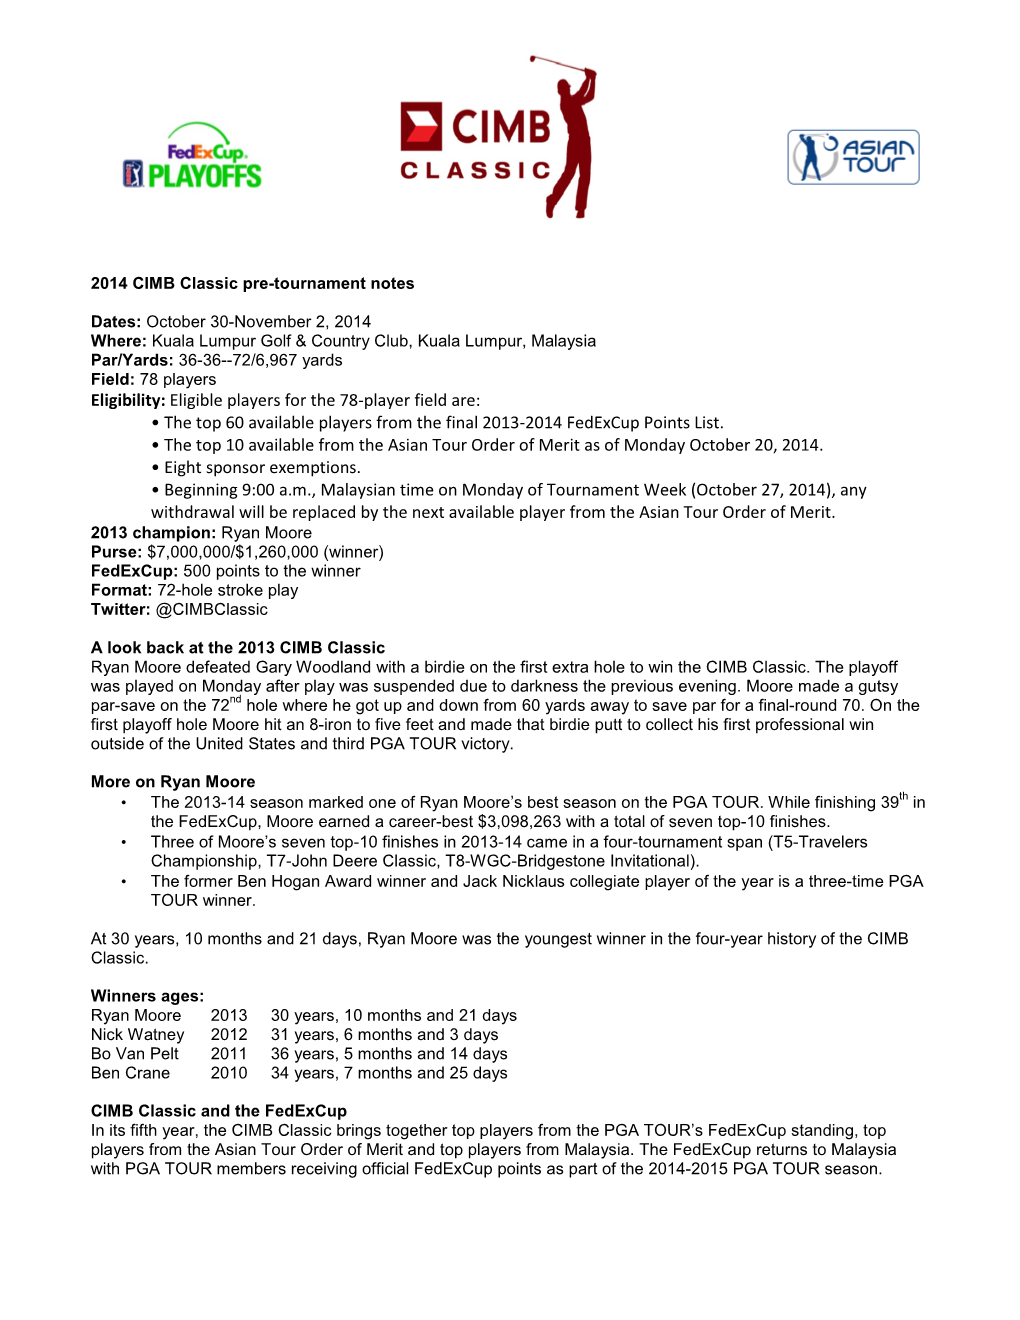 2014 CIMB Classic Pre-Tournament Notes-1